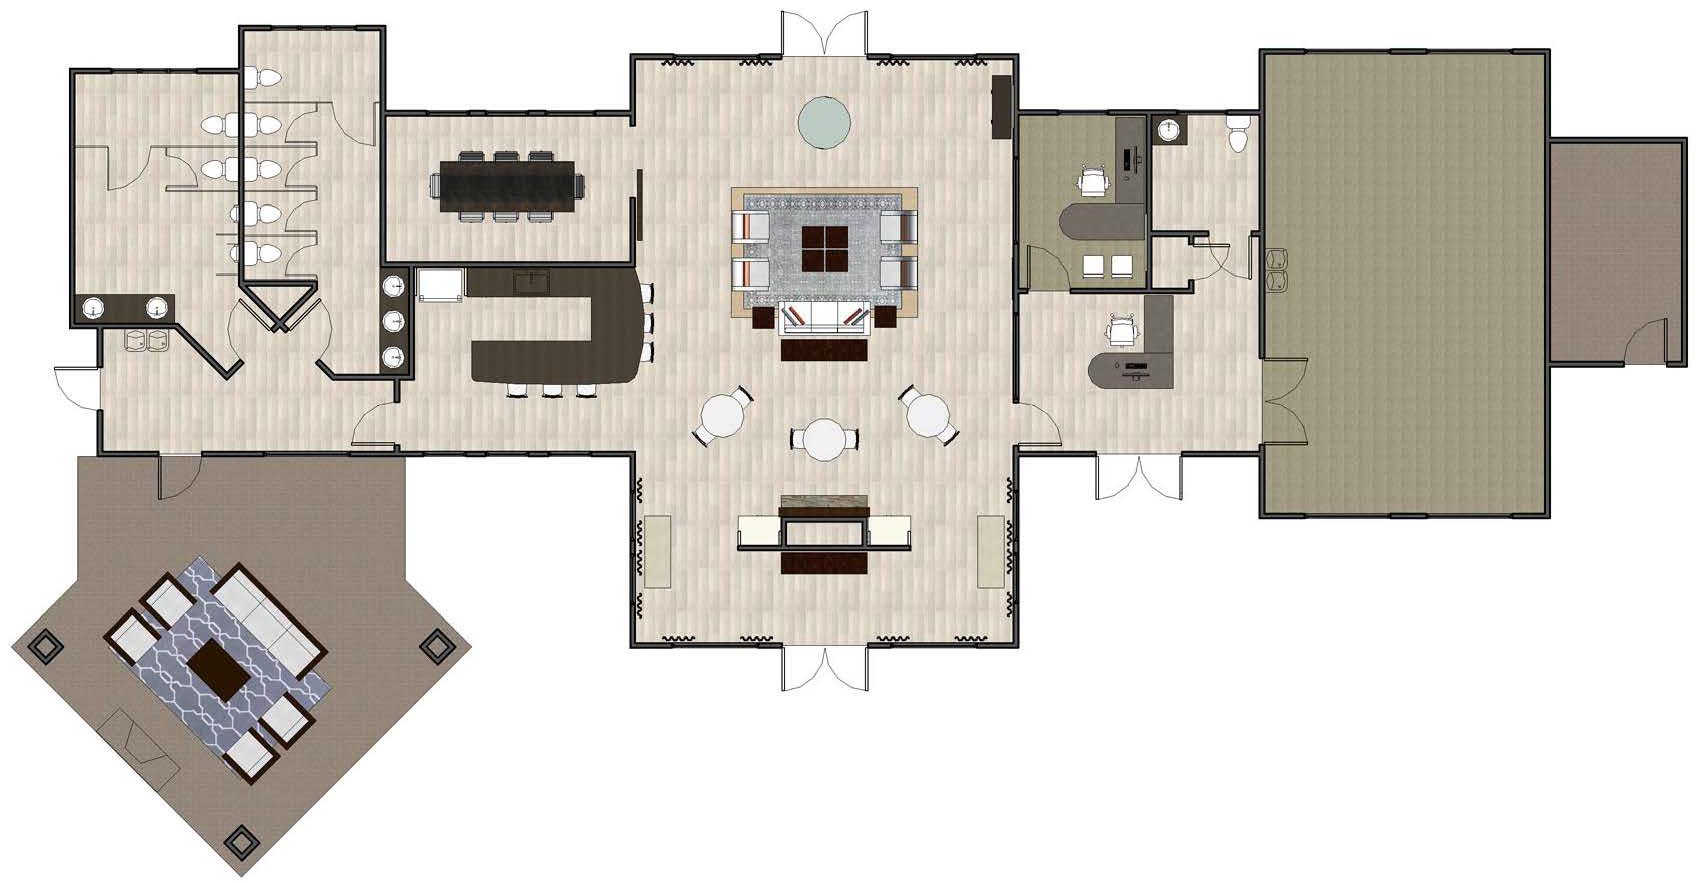 rendering ammenities center floorplan